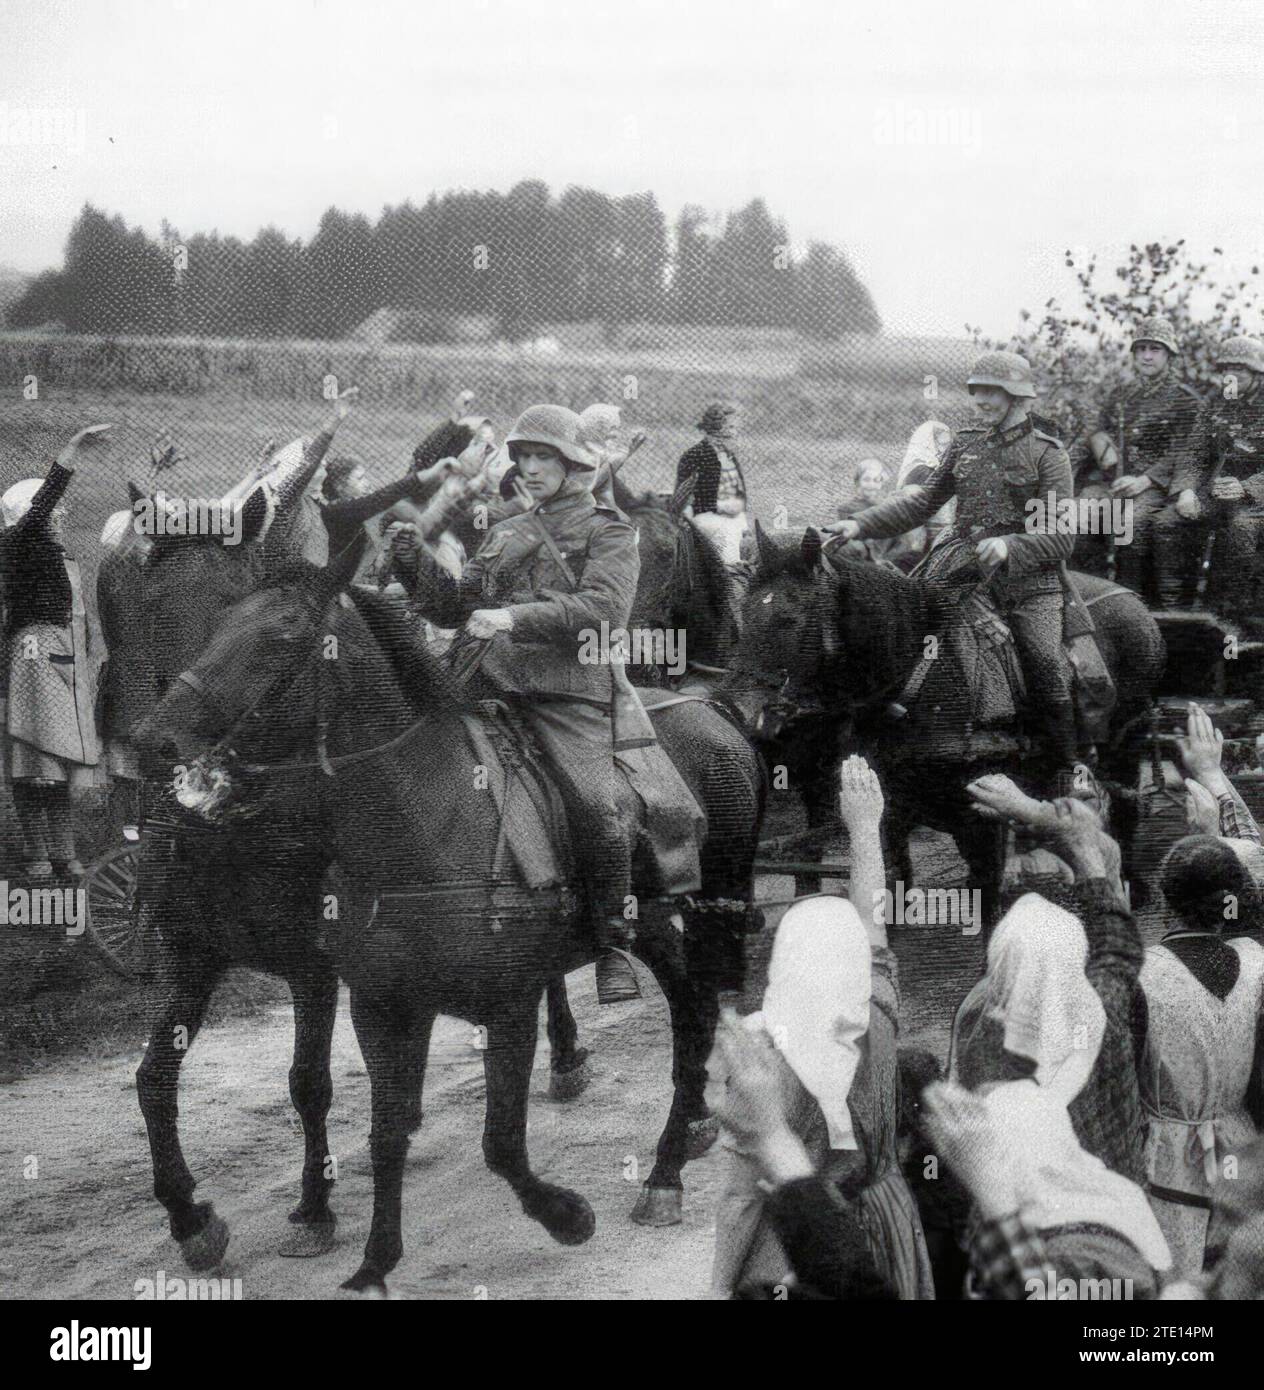 09/30/1938. L'armée allemande occupe les Sudètes après les accords de Munich. Crédit : Album / Archivo ABC Banque D'Images